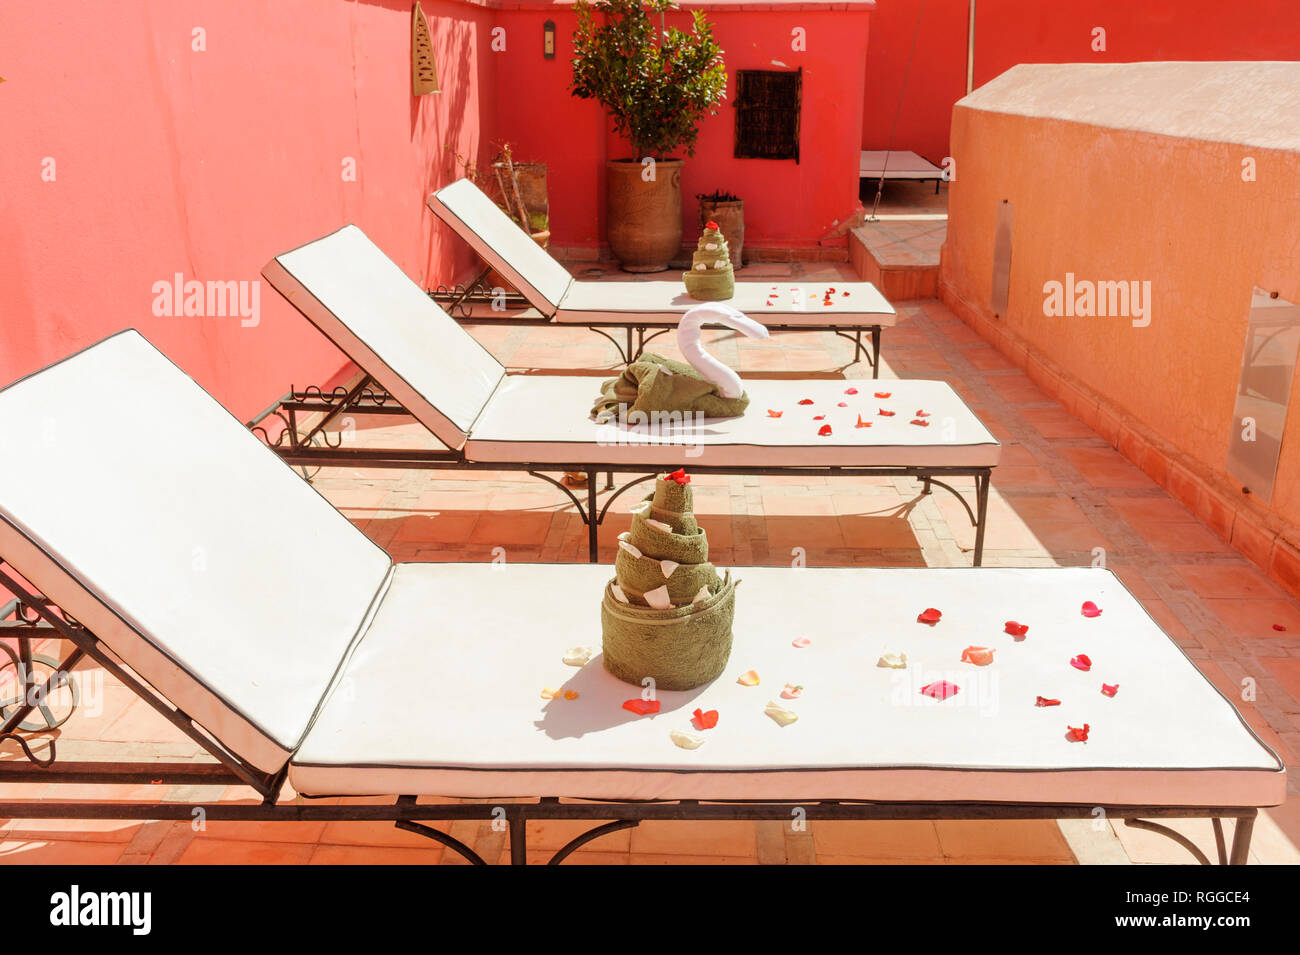 05-03-15, Marrakech, Marocco. Il Riad Porte Royale. Sedie a sdraio con decorativamente asciugamani piegati e petali di rose. Foto: © Simon Grosset Foto Stock